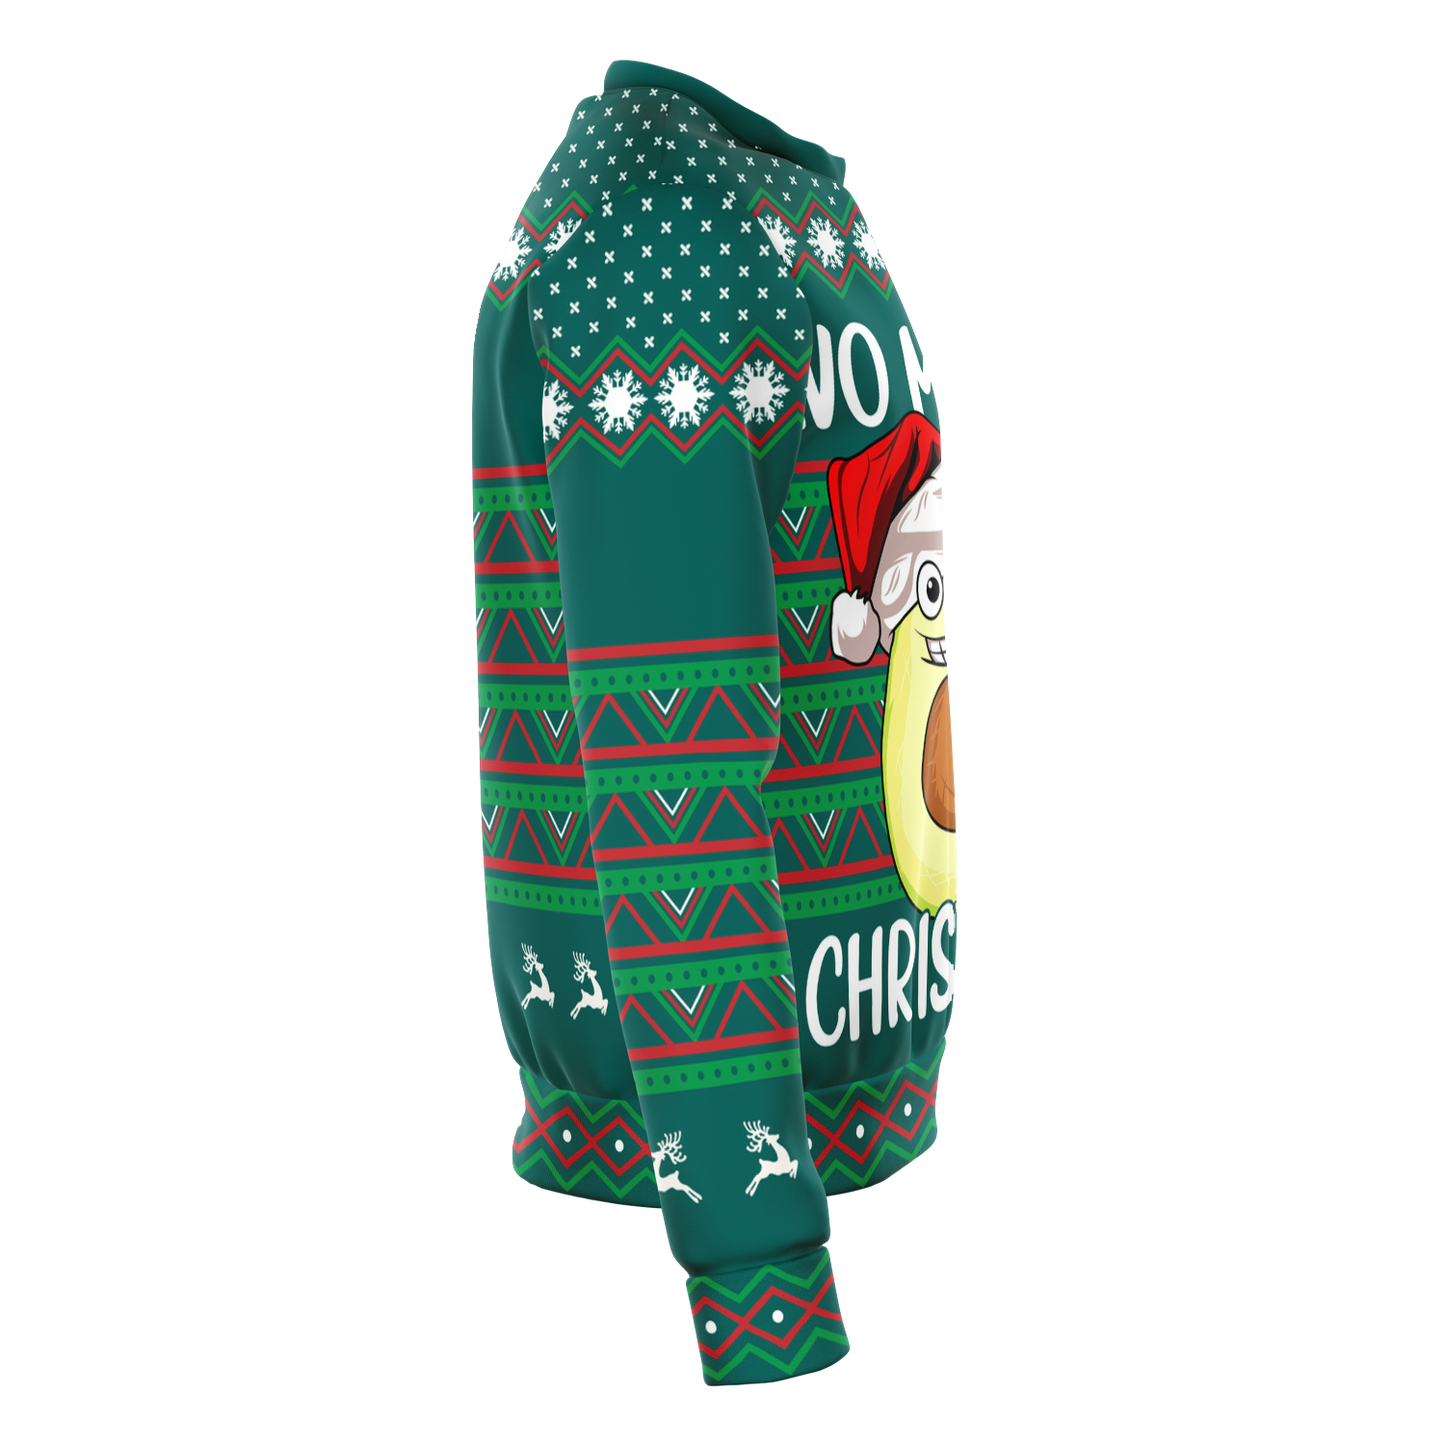 Avo Merry Christmas - Ugly Christmas Sweater